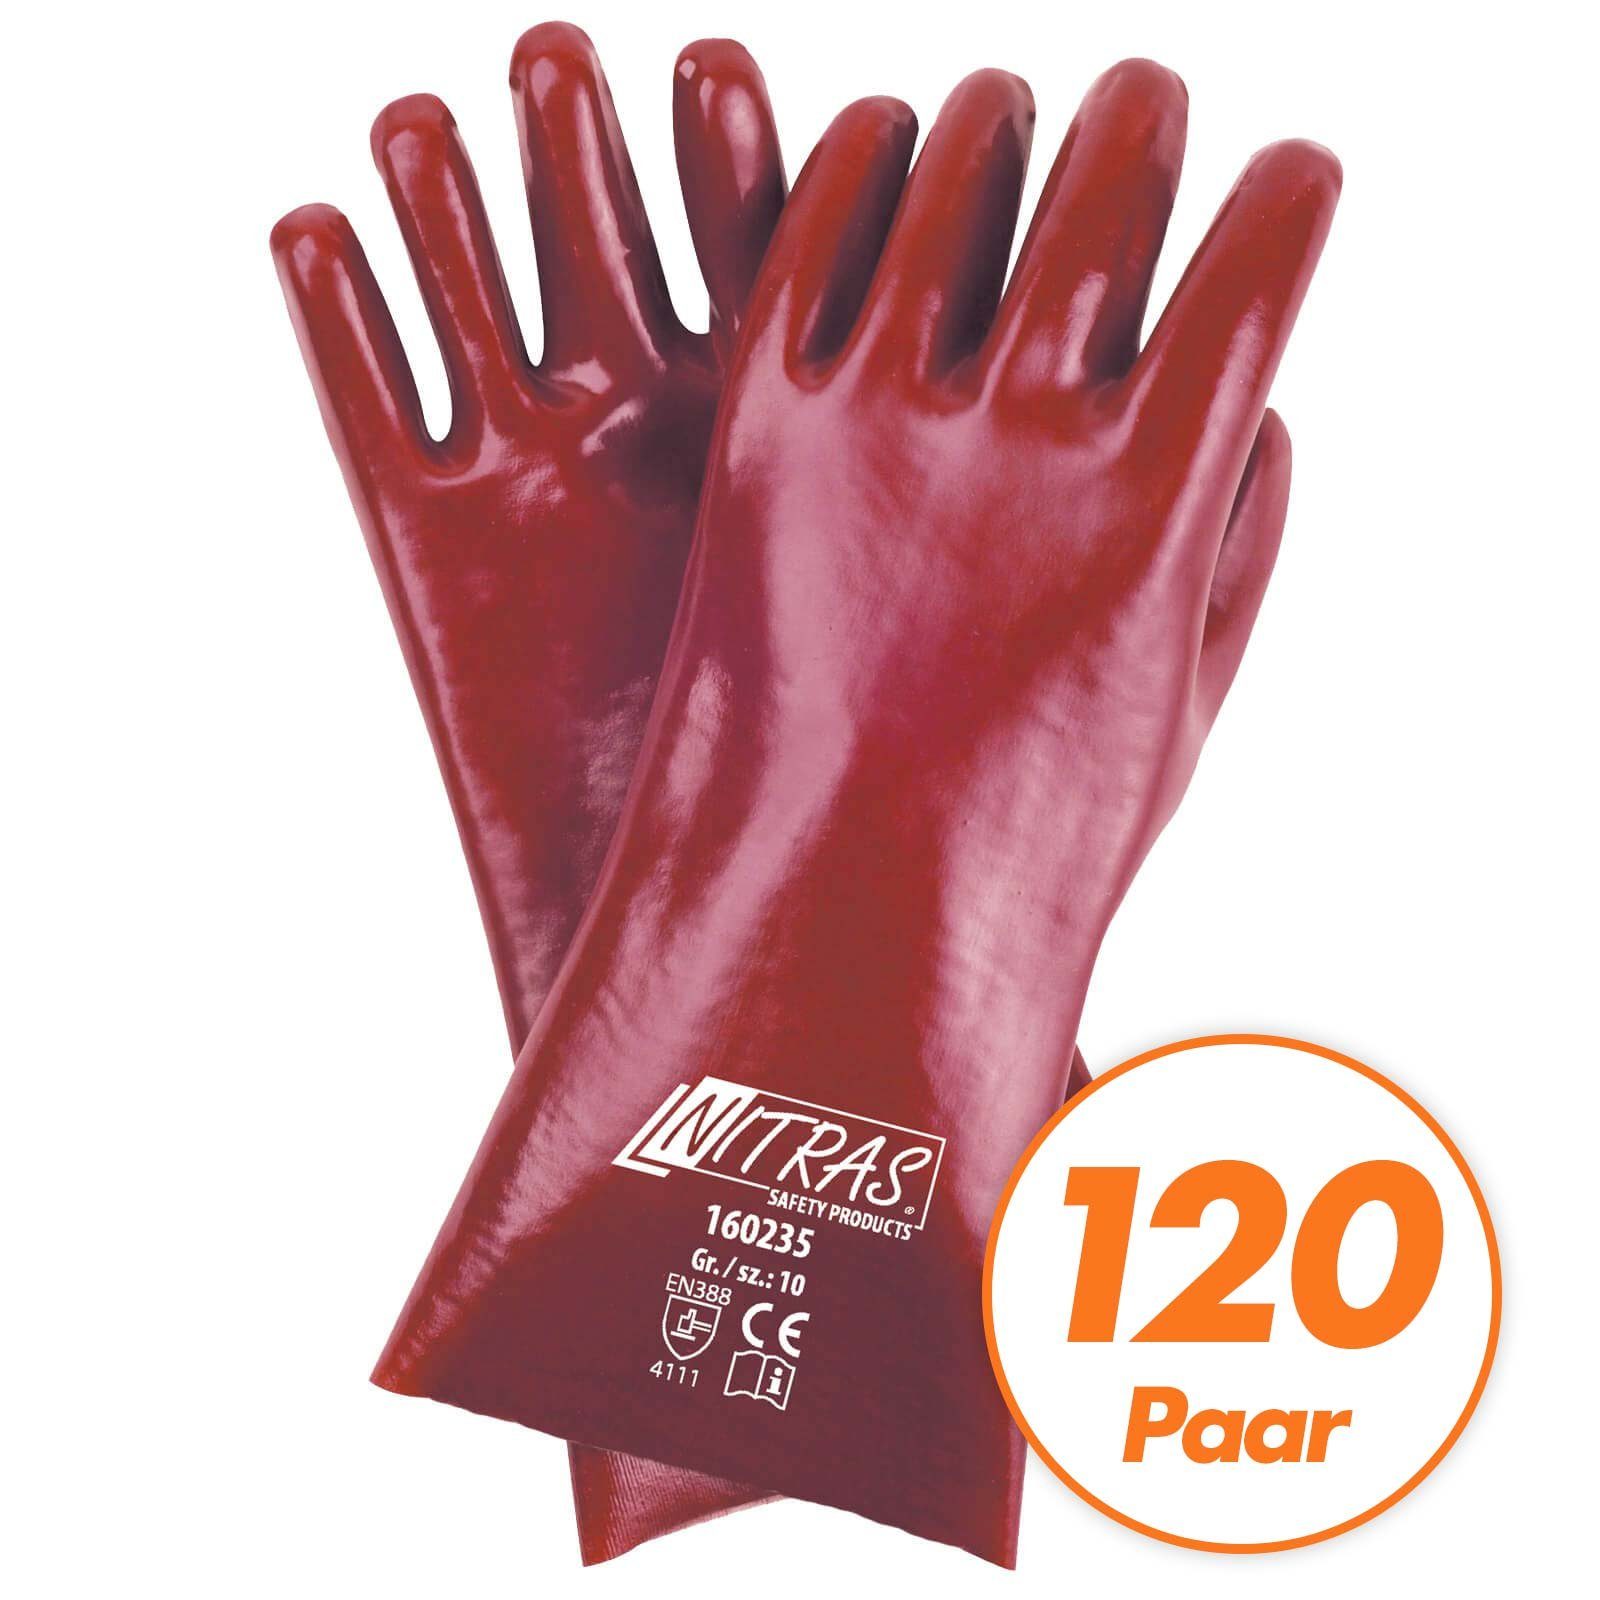 Nitras Nitril-Handschuhe NITRAS PVC-Handschuhe 160235 Chemikalienhandschuhe 35cm 120Paar (Spar-Set)